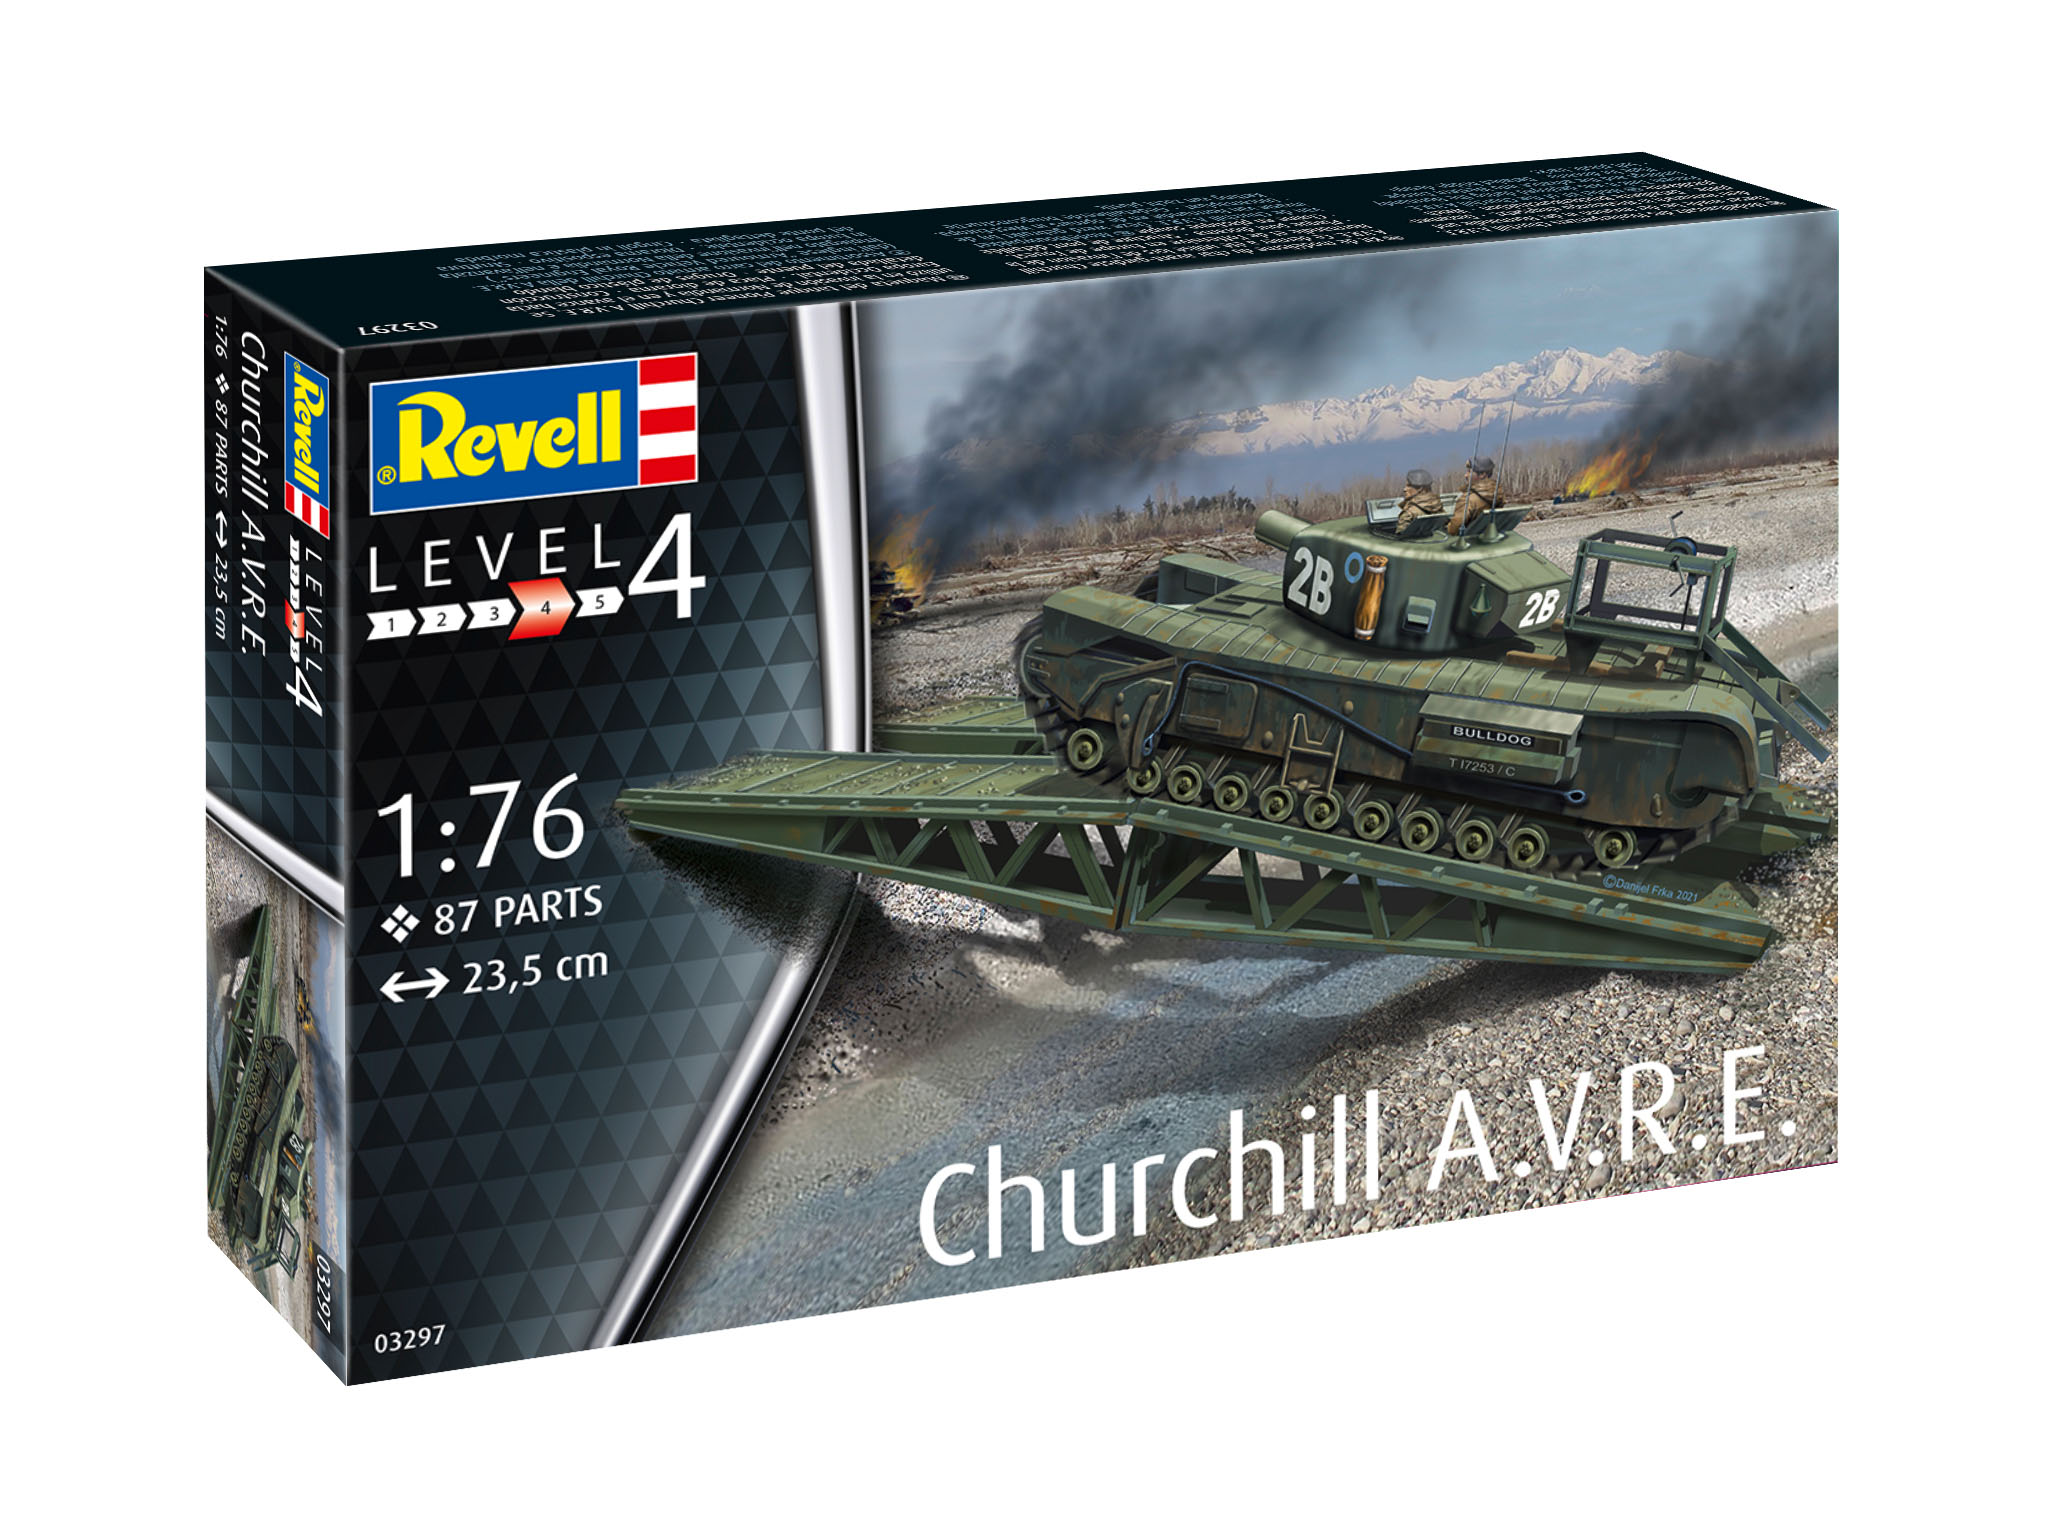 Fotografie Plastic ModelKit tank 03297 - Churchill A.V.R.E. (1:76)